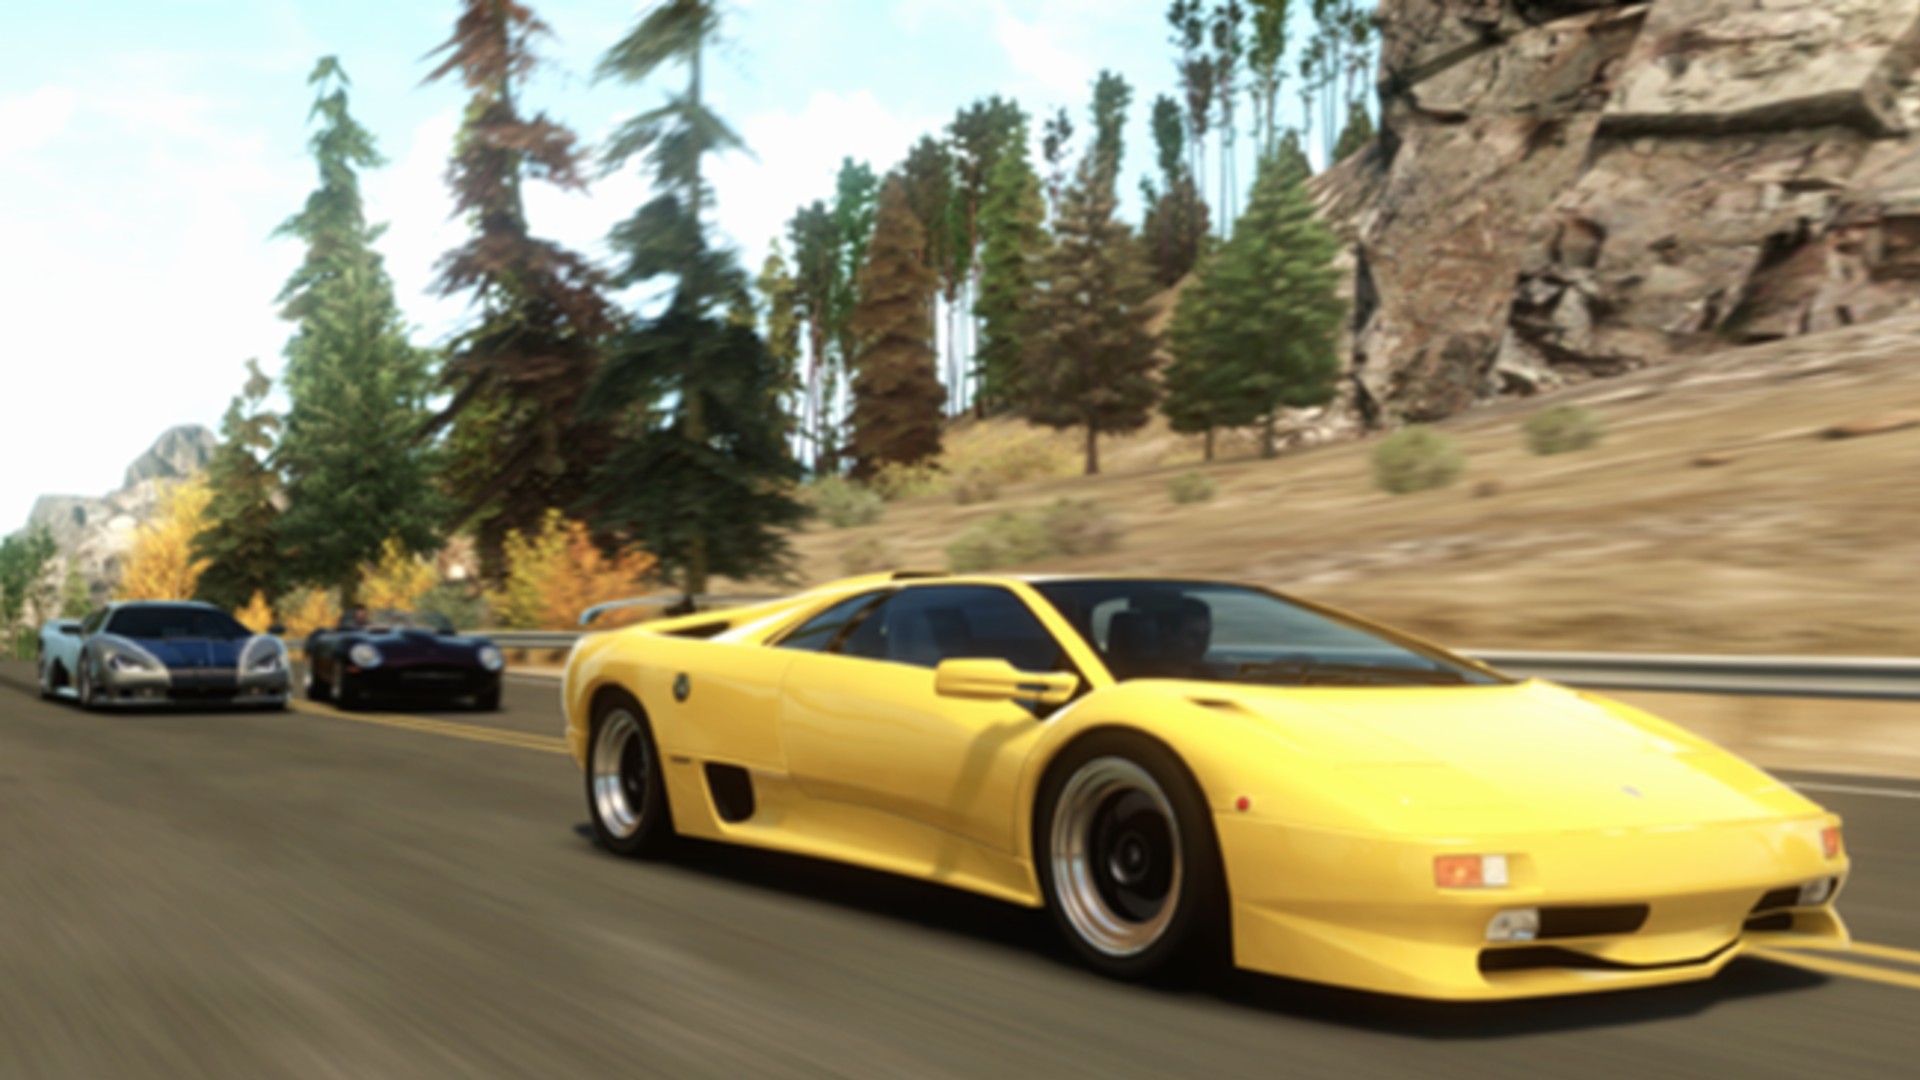 General 1920x1080 Forza car racing video games PlaygroundGames Lamborghini Lamborghini Diablo italian cars Volkswagen Group